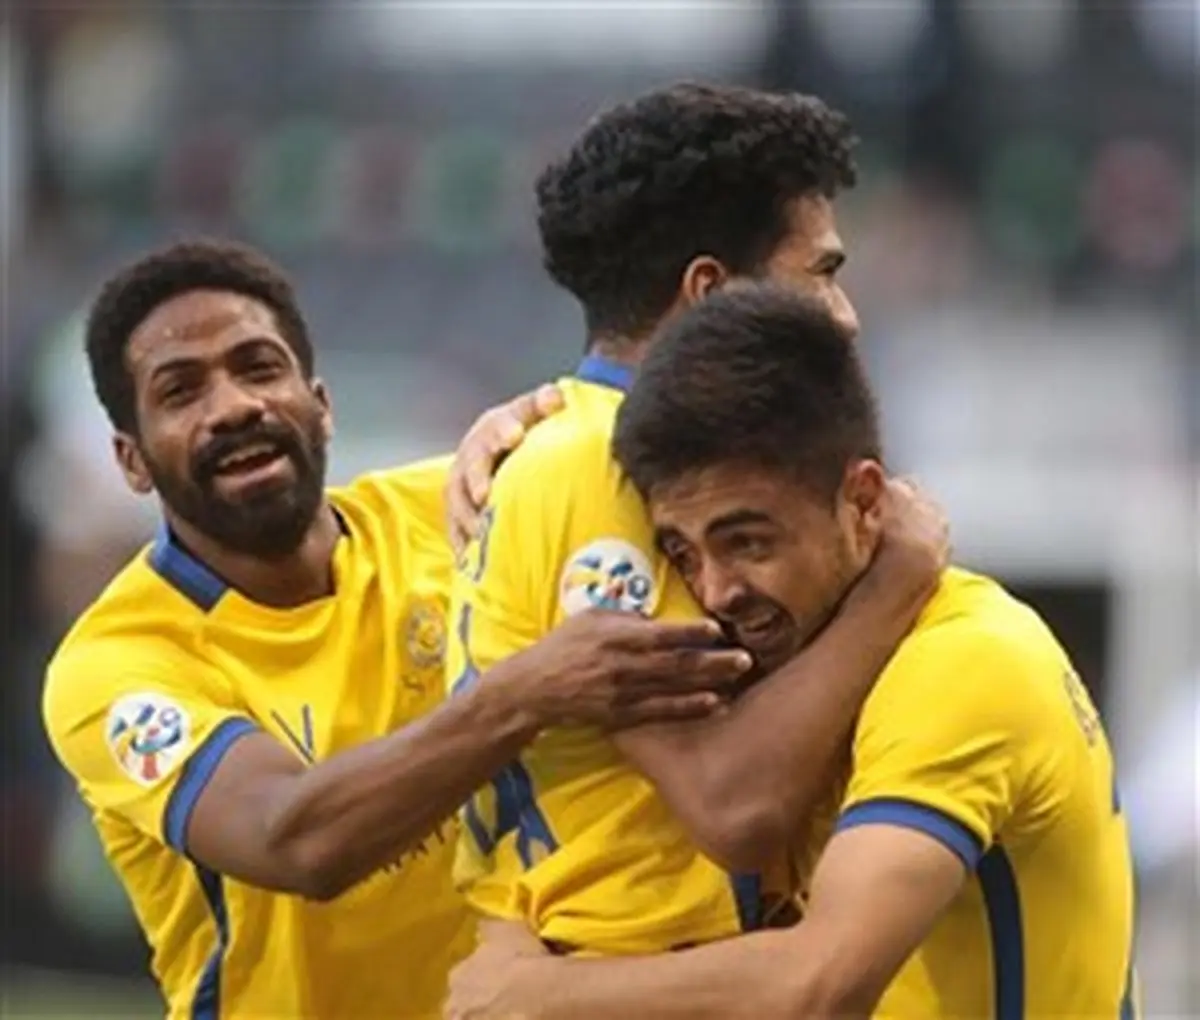  لیگ قهرمانان آسیا  | النصر با صدرنشینی در گروه D به مرحله یک هشتم رسید